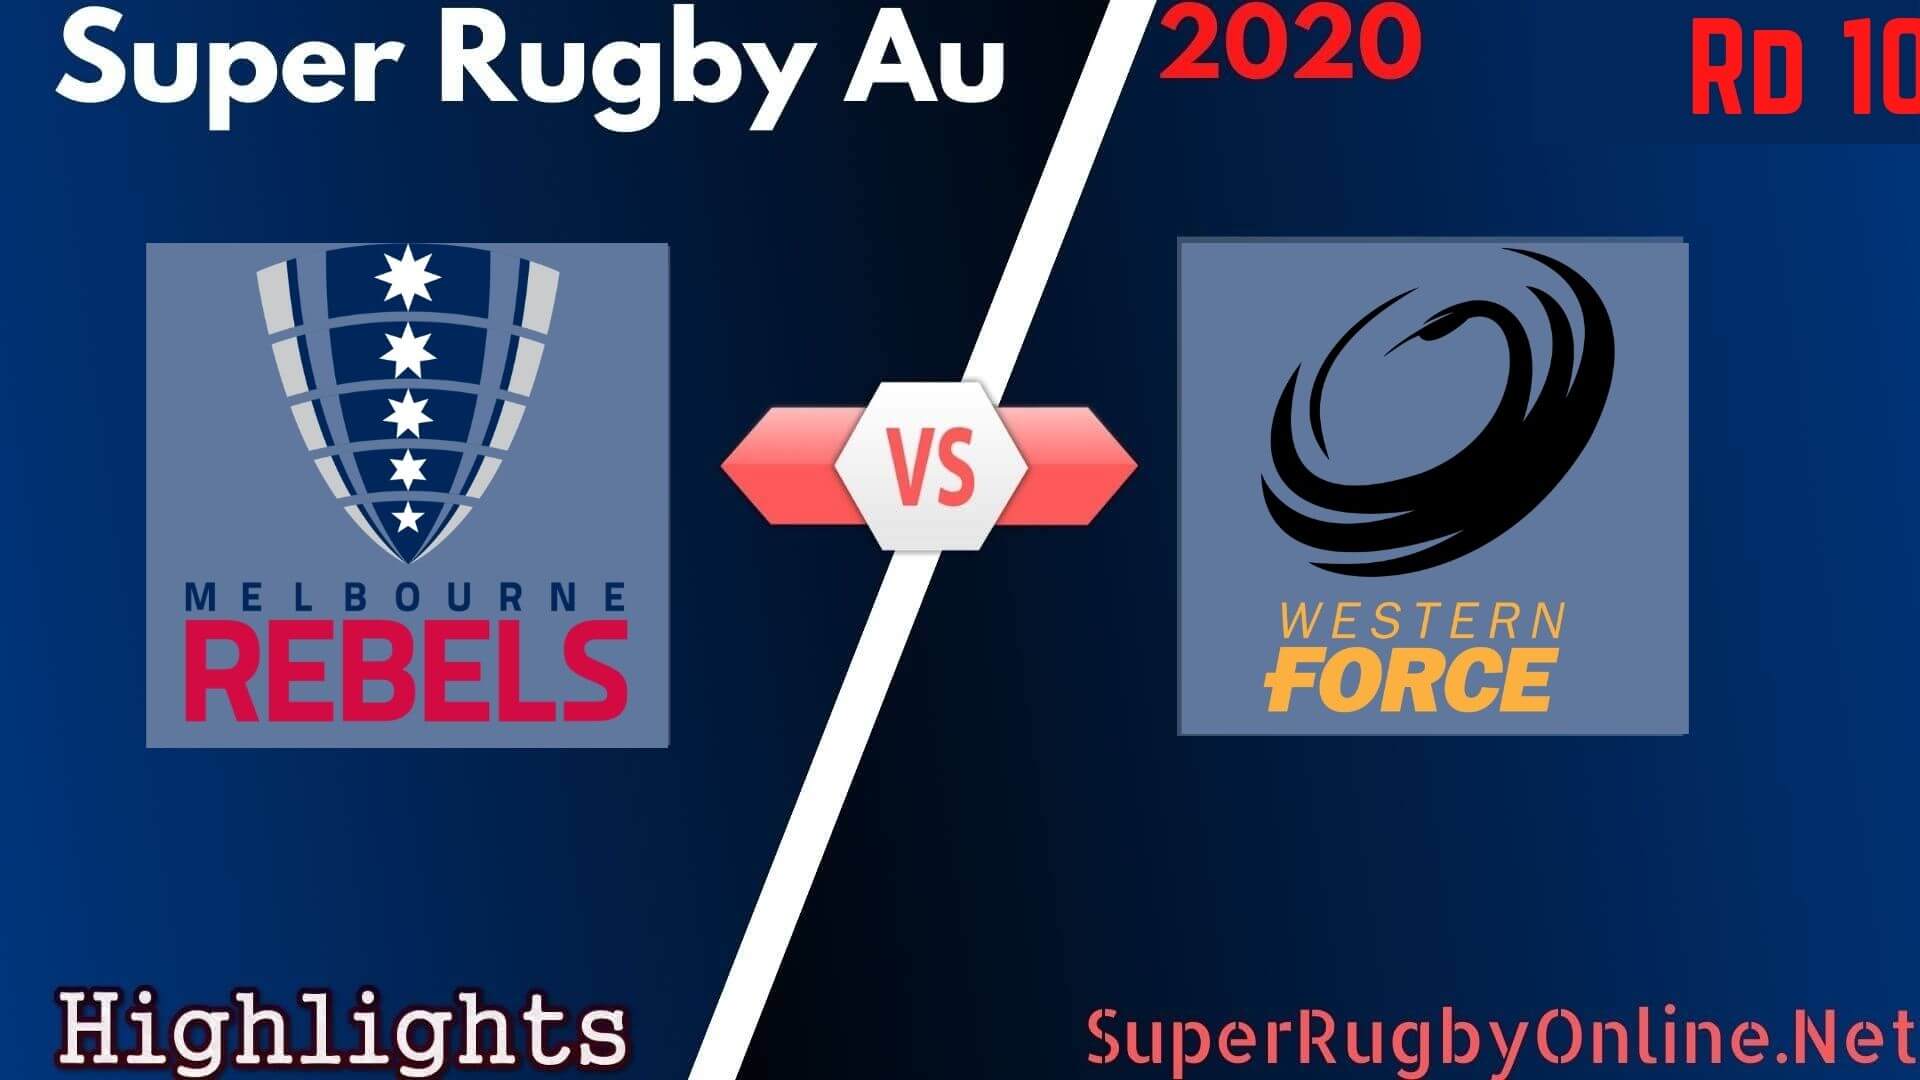 Rebels Vs Force Rd 10 Highlights 2020 Super Rugby Au